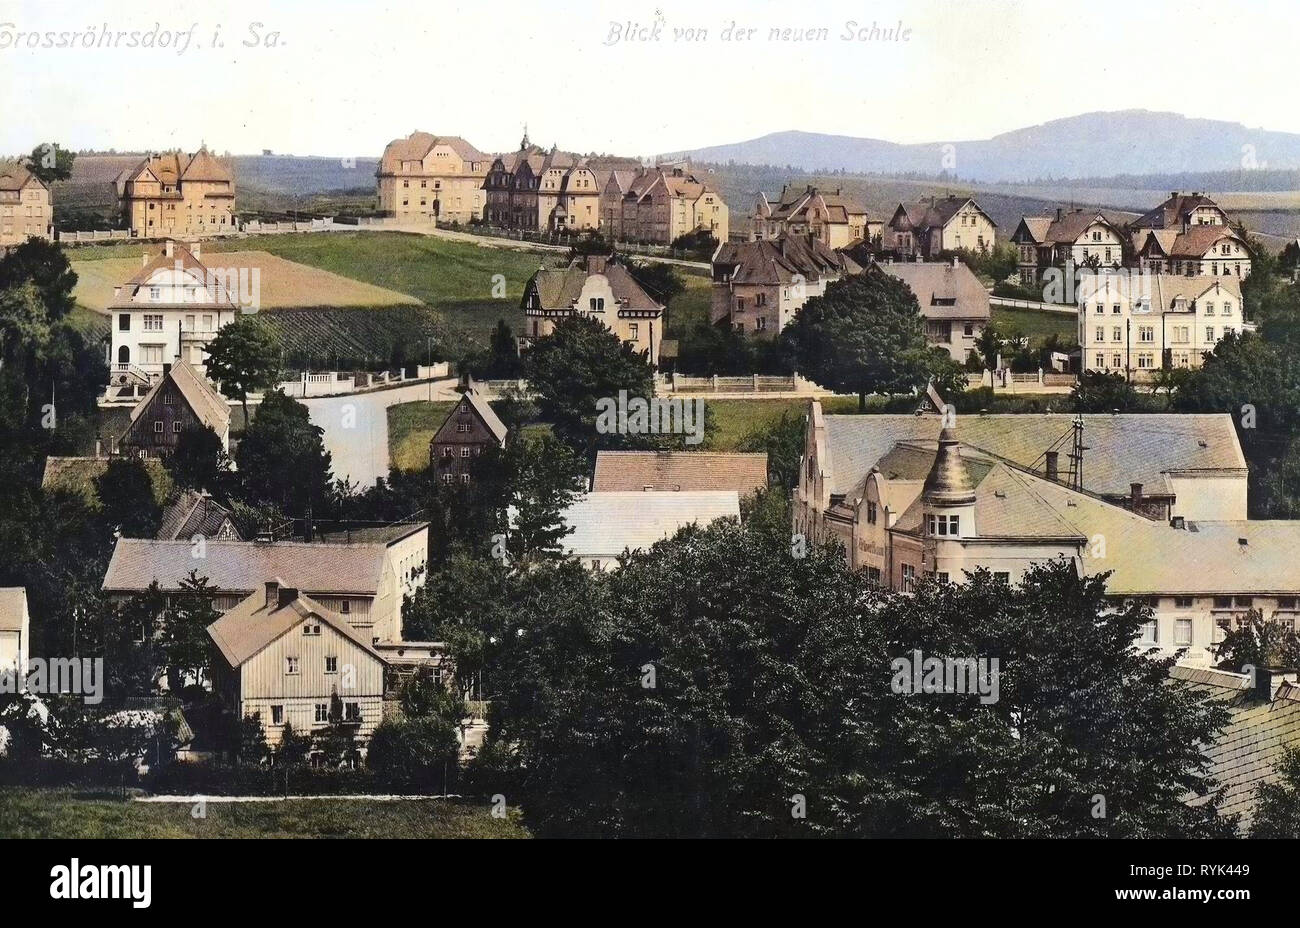 Buildings in Großröhrsdorf, 1914, Landkreis Bautzen, Großröhrsdorf, Blick von der neuen Schule, Germany Stock Photo